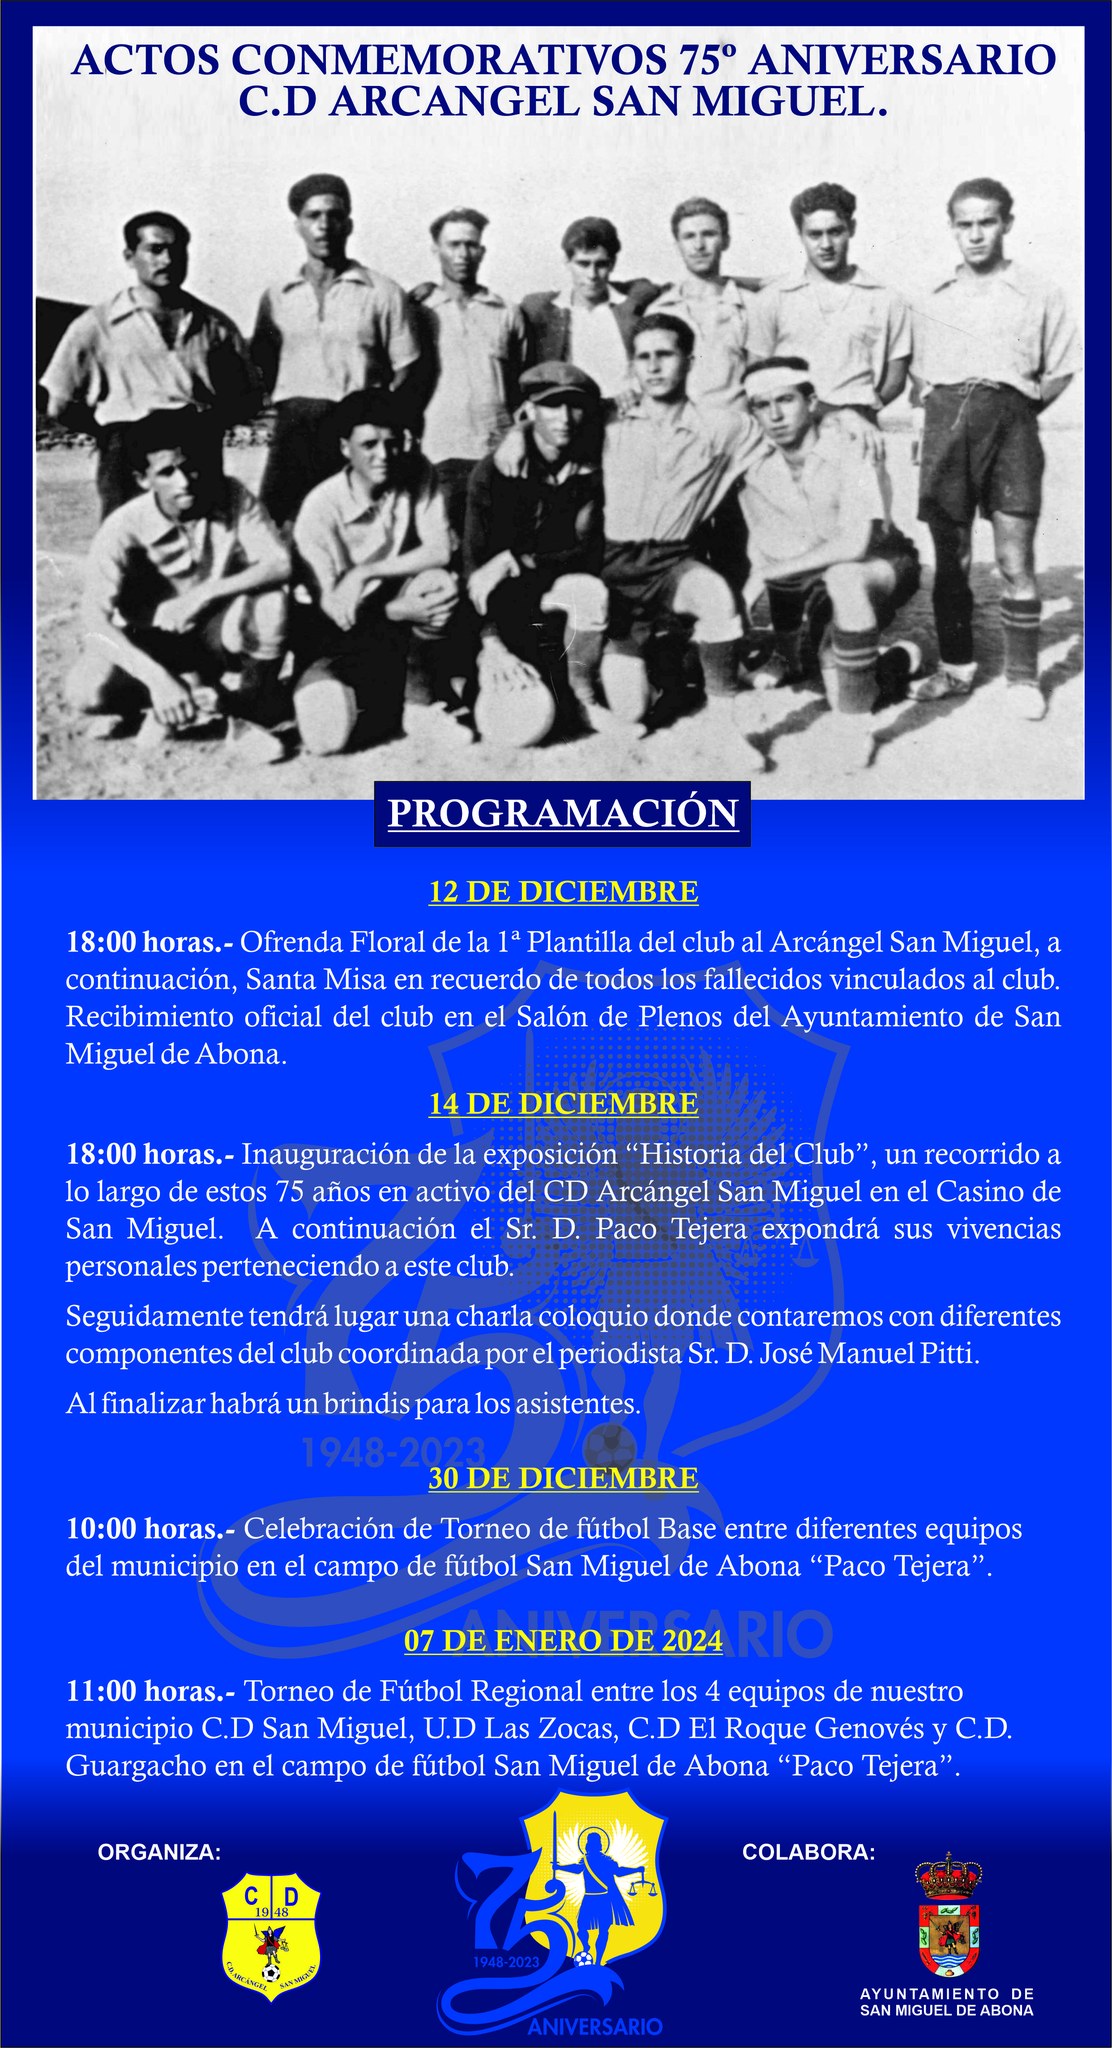 El CD Arcángel San Miguel conmemora su 75 aniversario con una variada programación